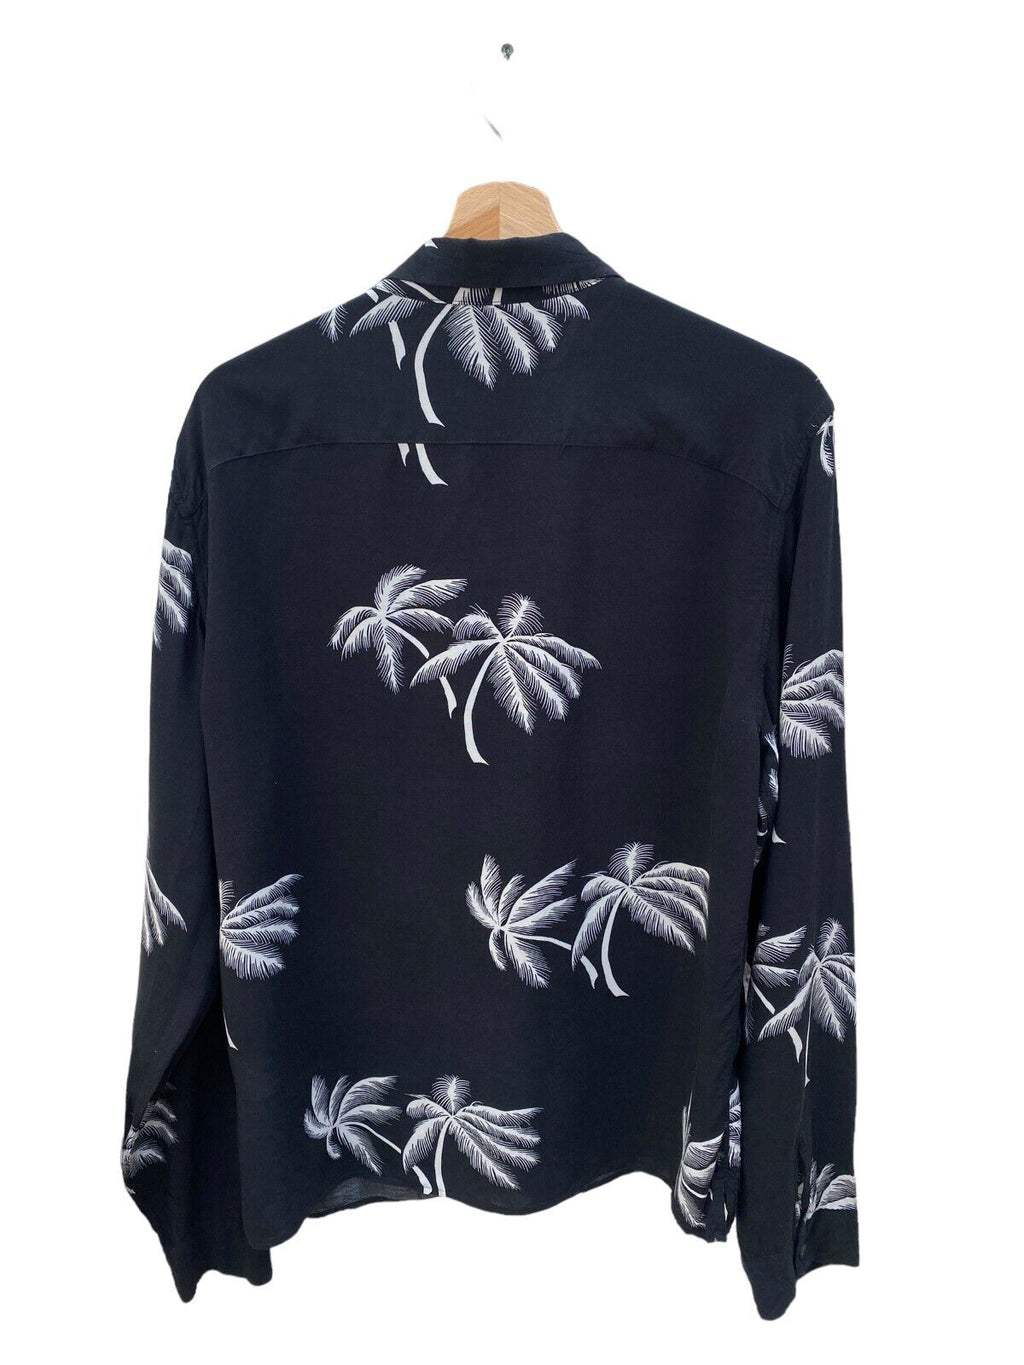 Black Hawaiian Floral shirt